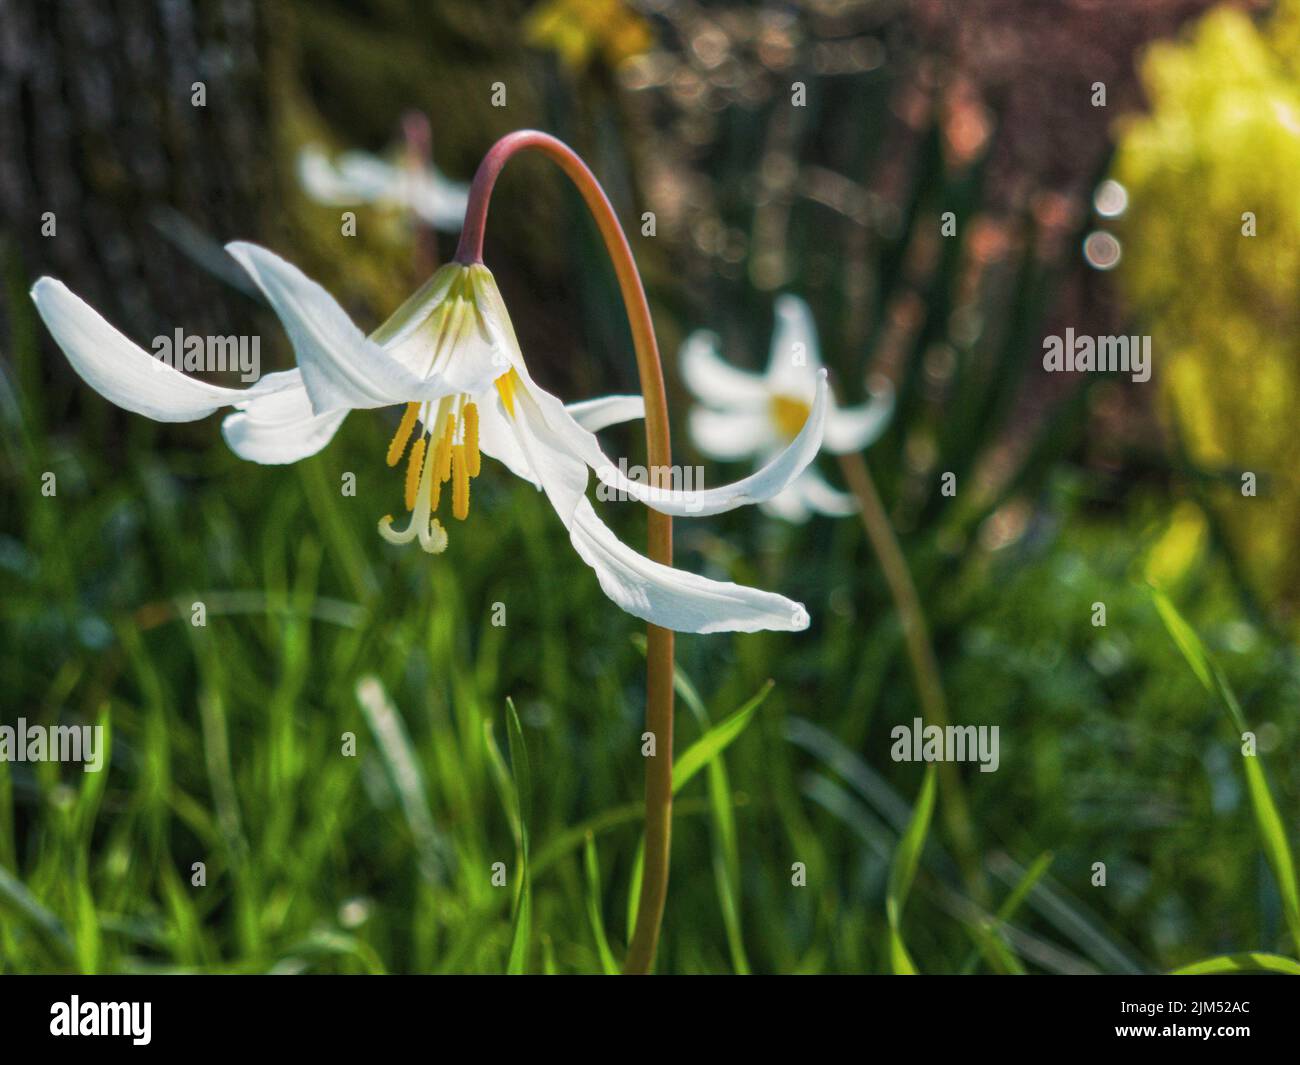 Un primer plano de una gigantesca flor de lirio blanco de fawn que florece en un jardín a la luz del día con un fondo borroso Foto de stock